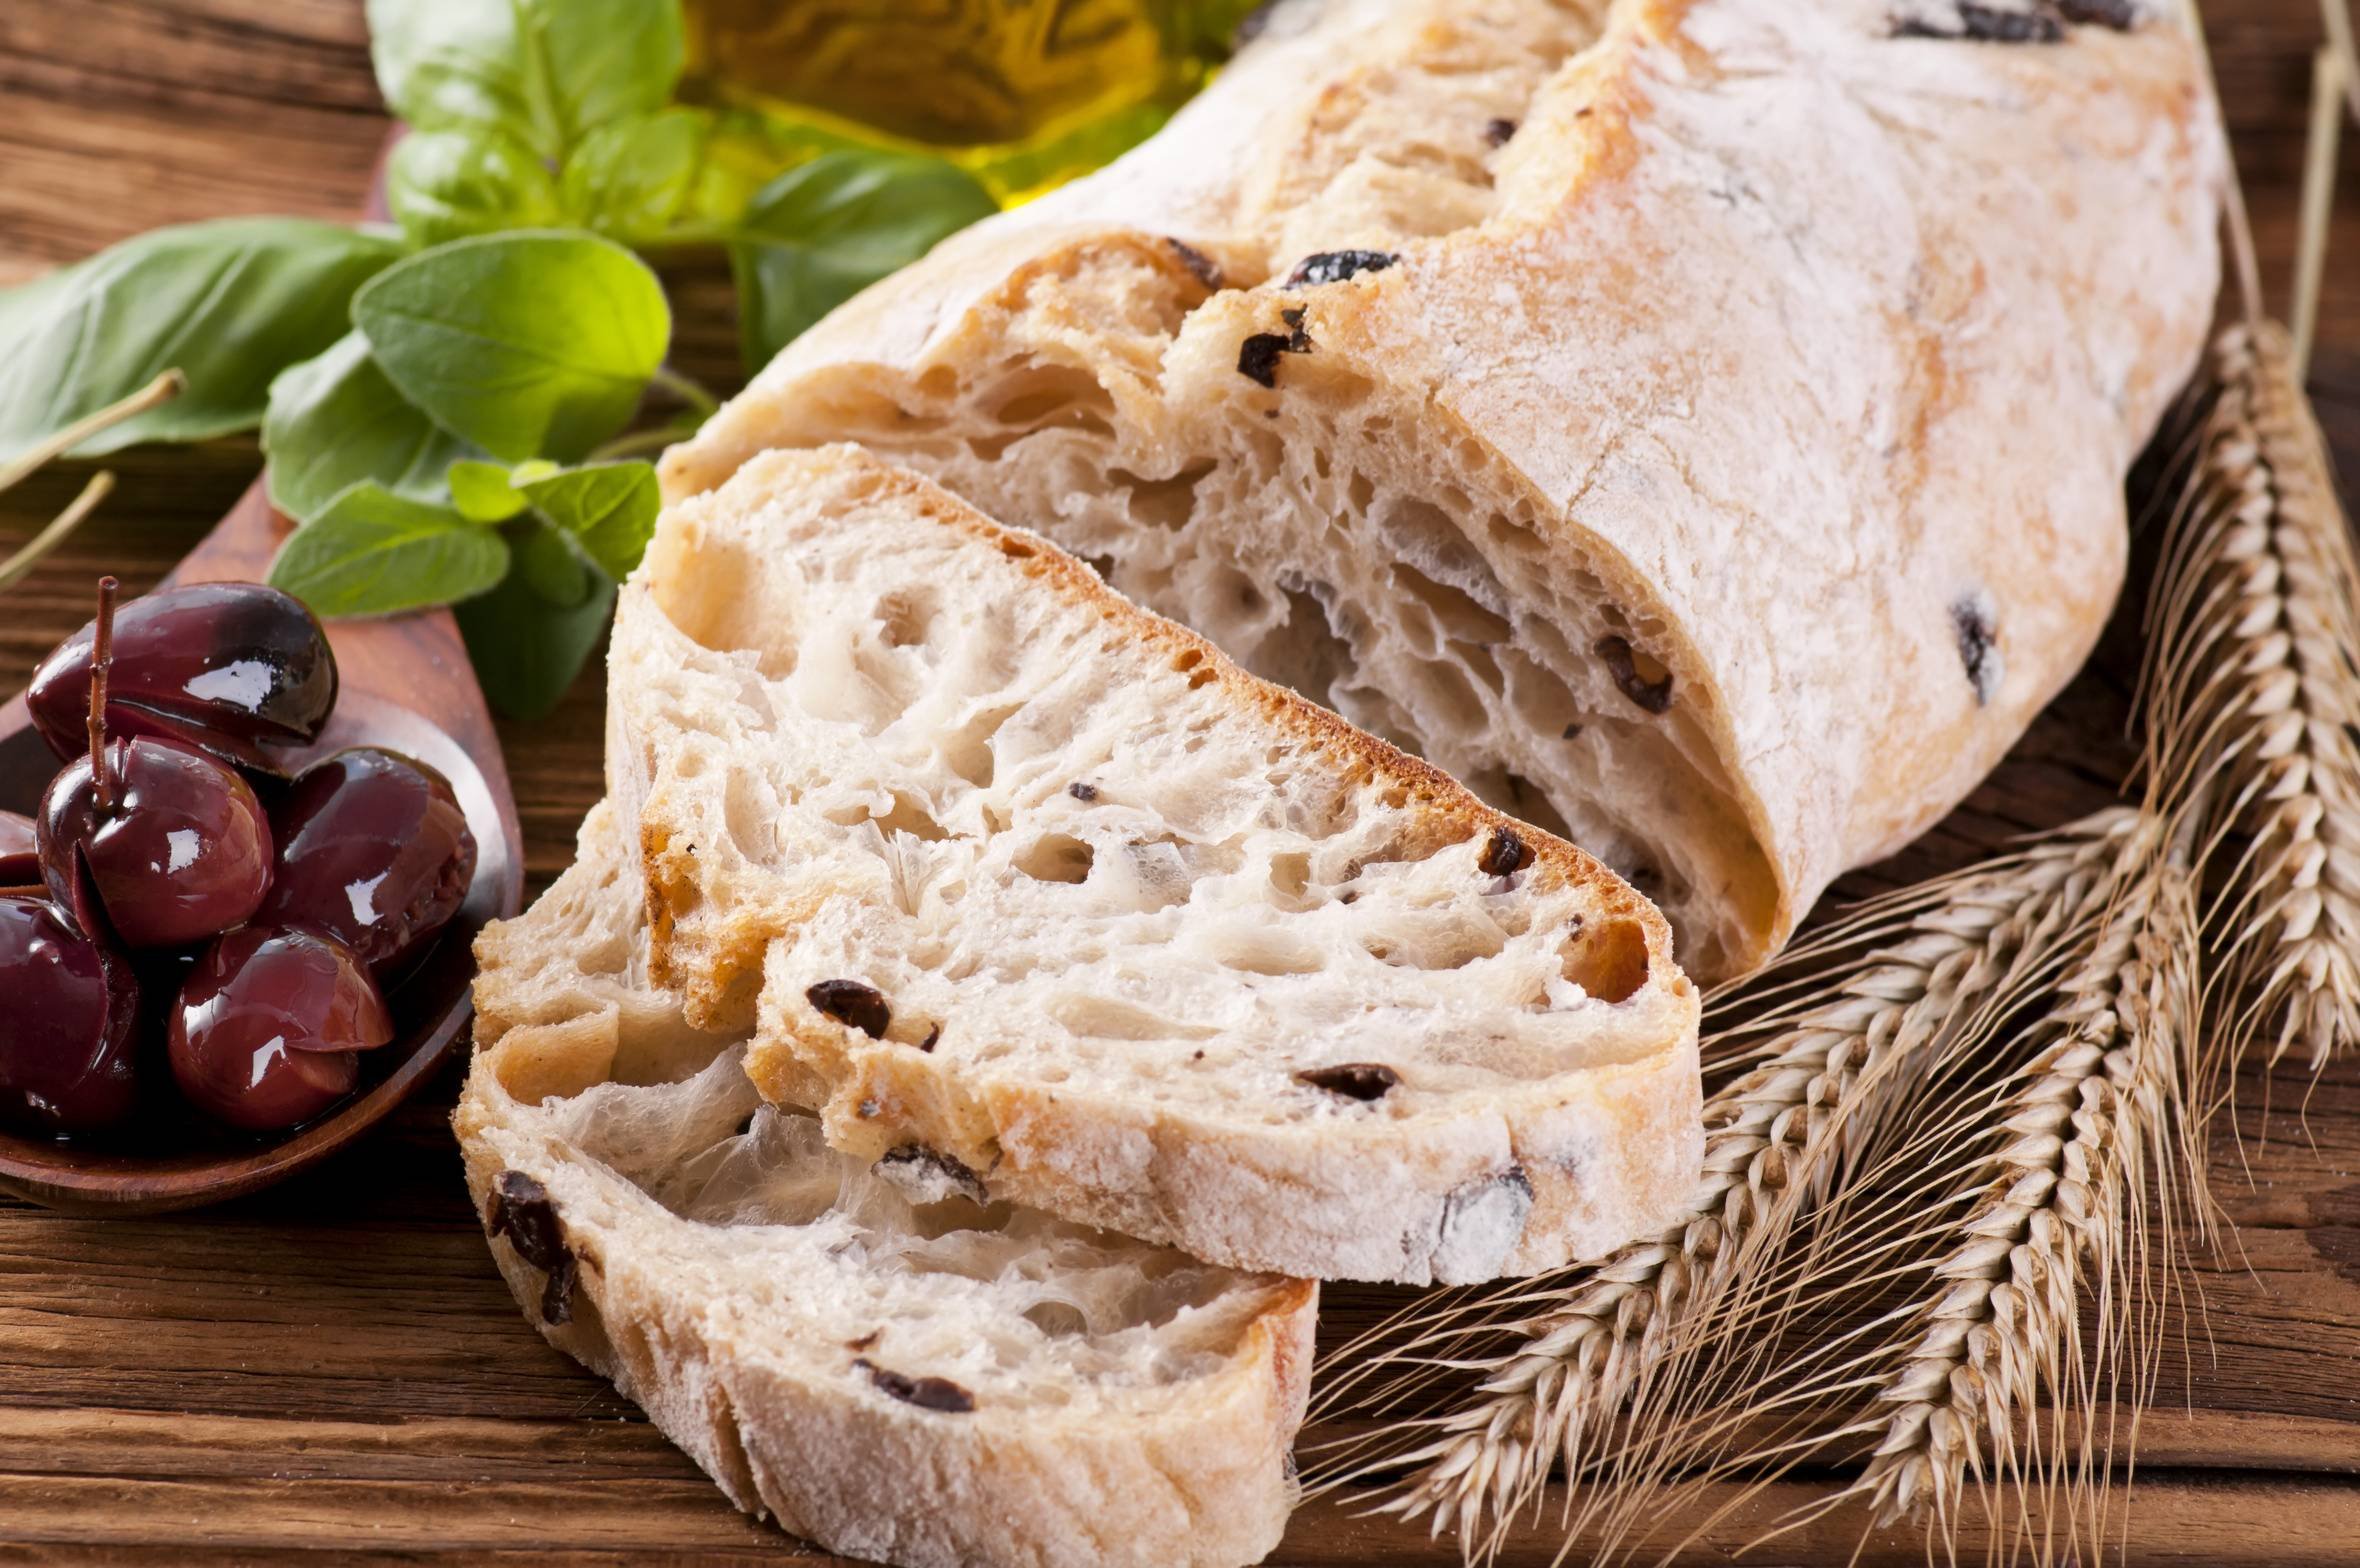 виды итальянского хлеба фото и название